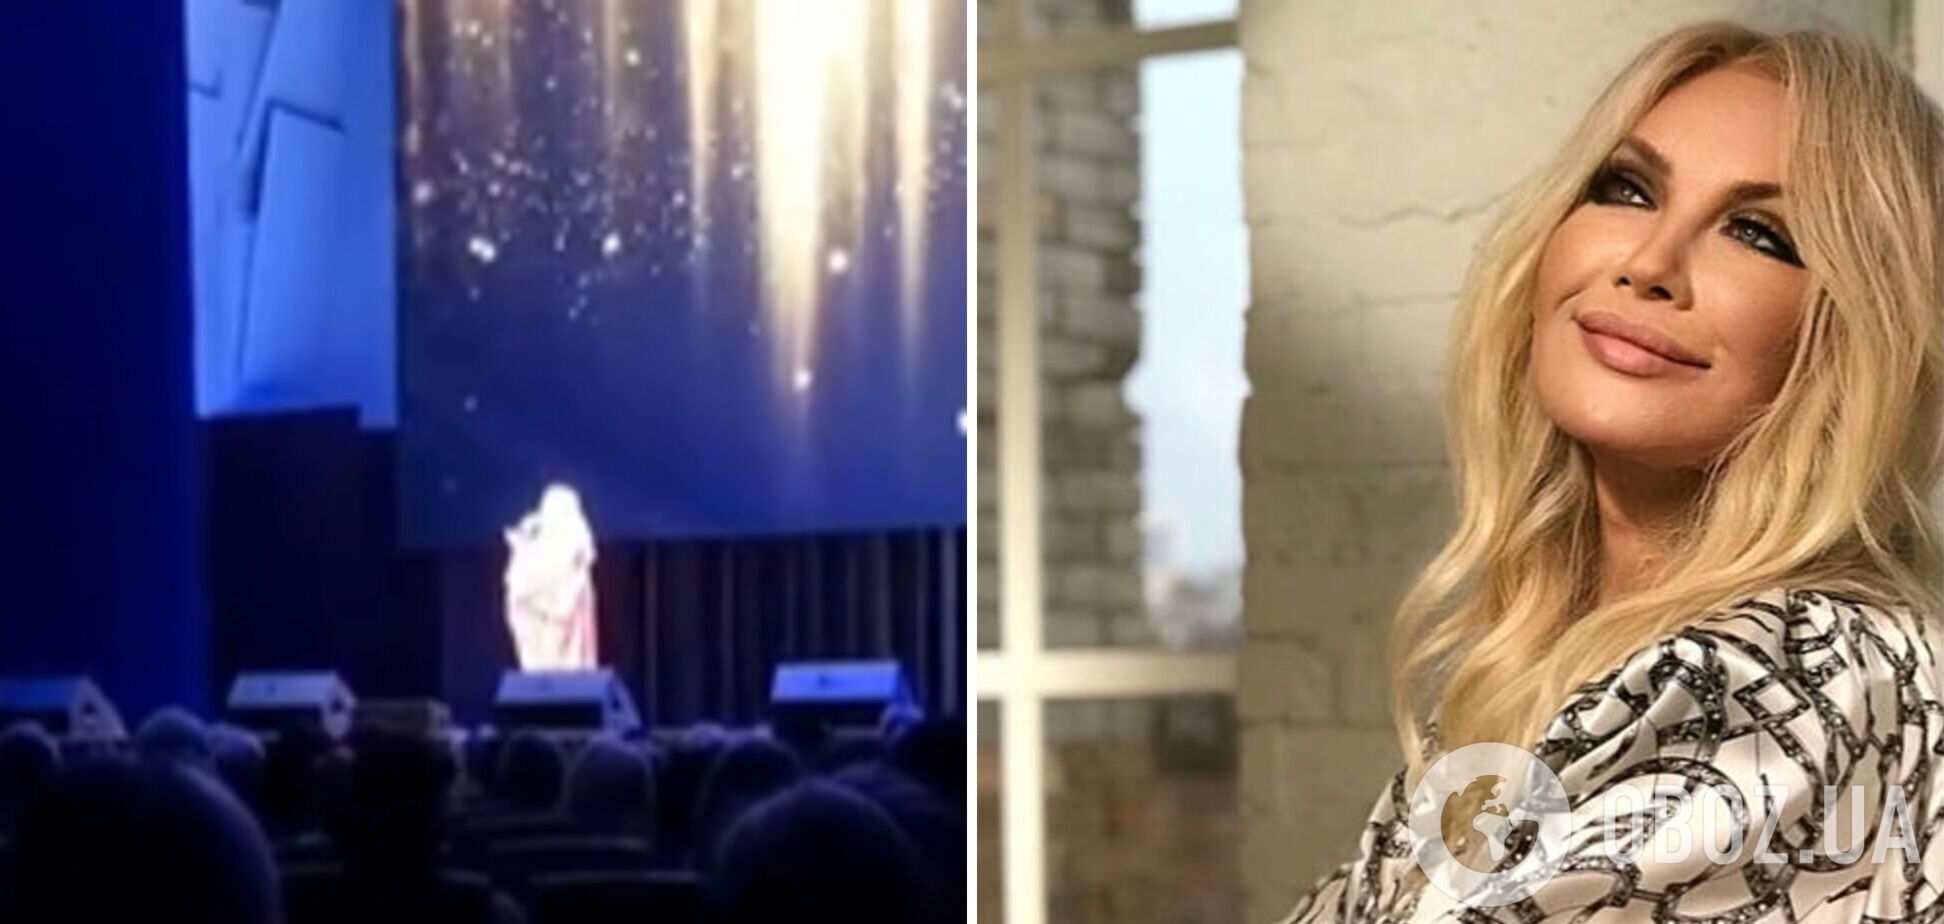 Таїсія Повалій цинічно виконала 'Черемшину' українською мовою на концерті в Новосибірську